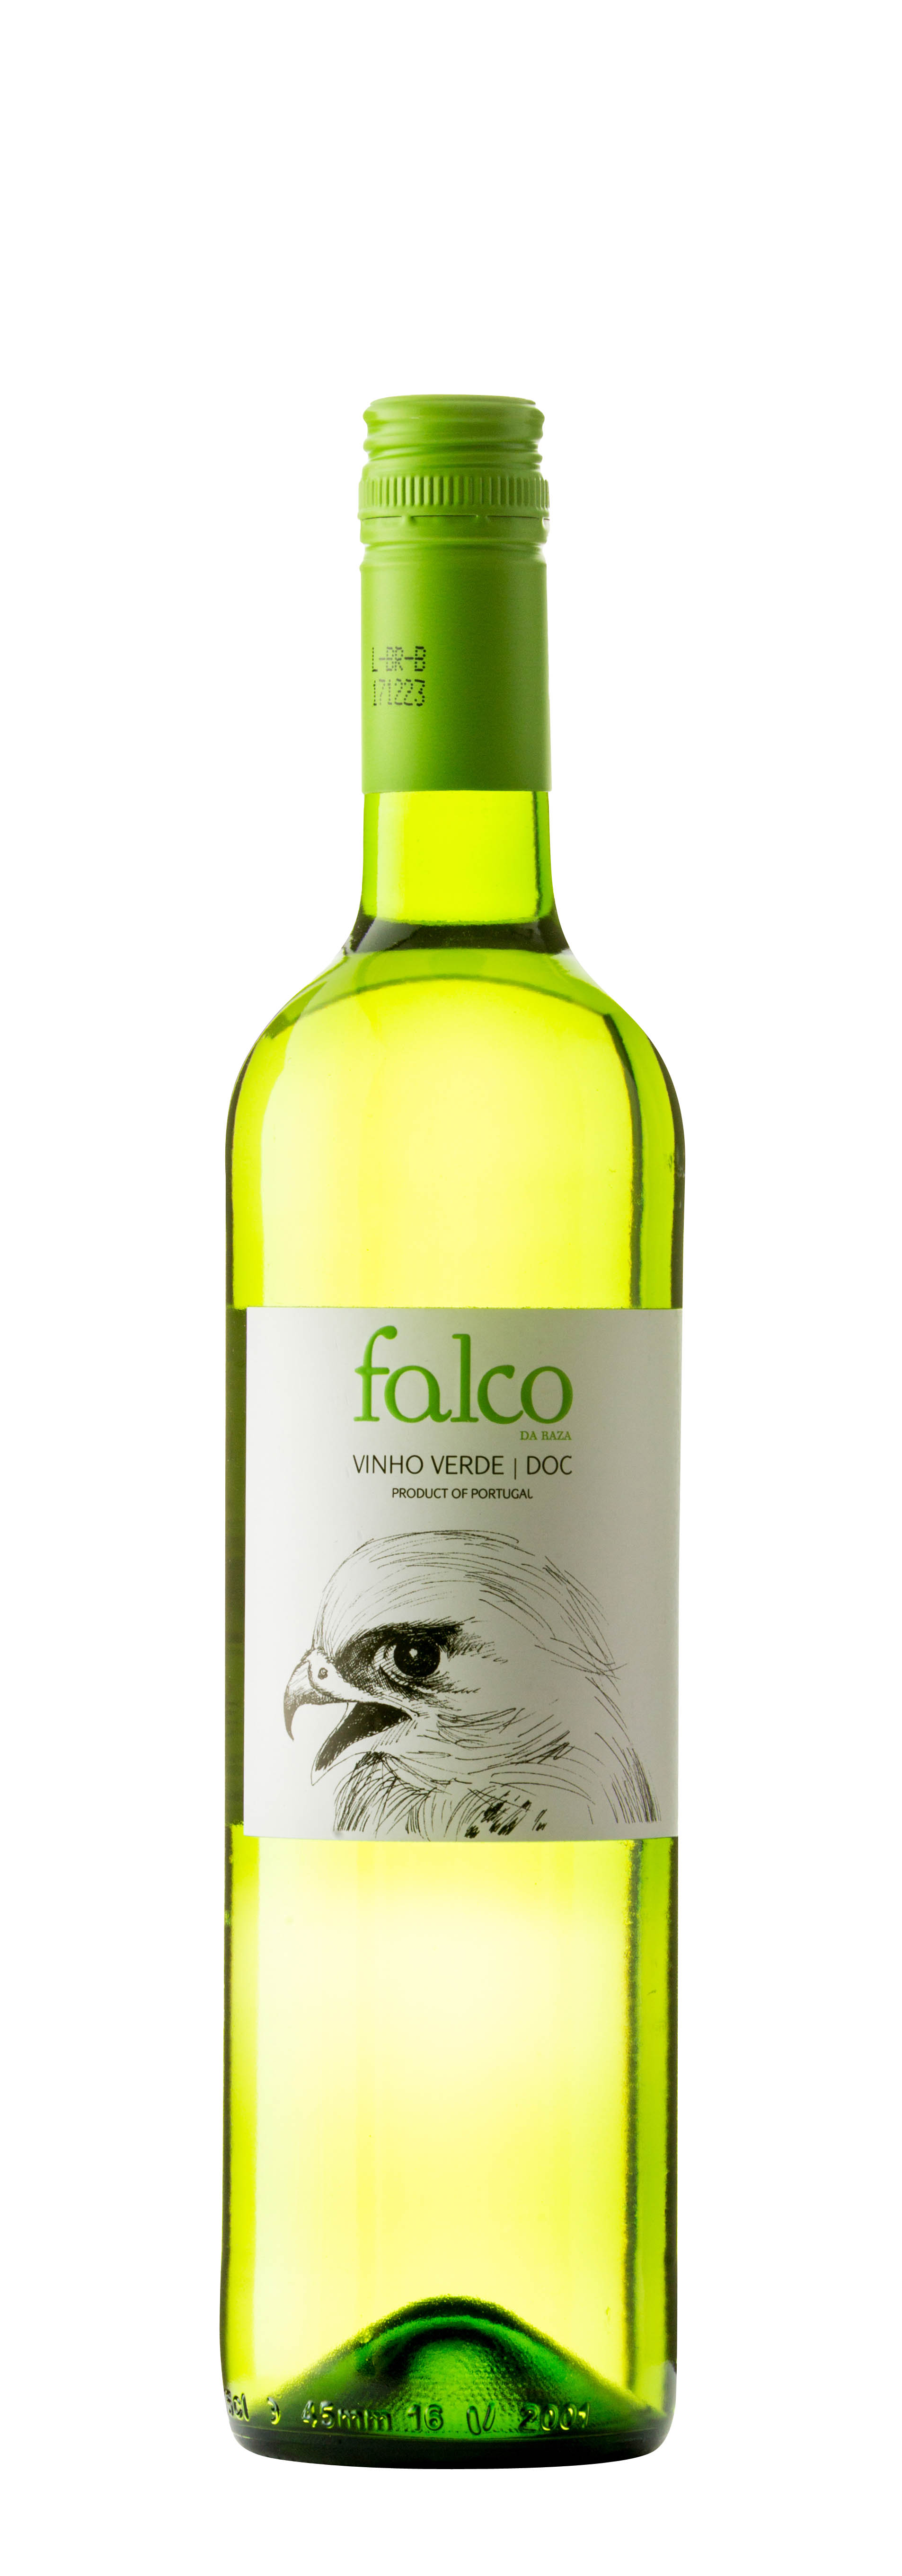 DOC Vinho Verde Falco da Raza 2017